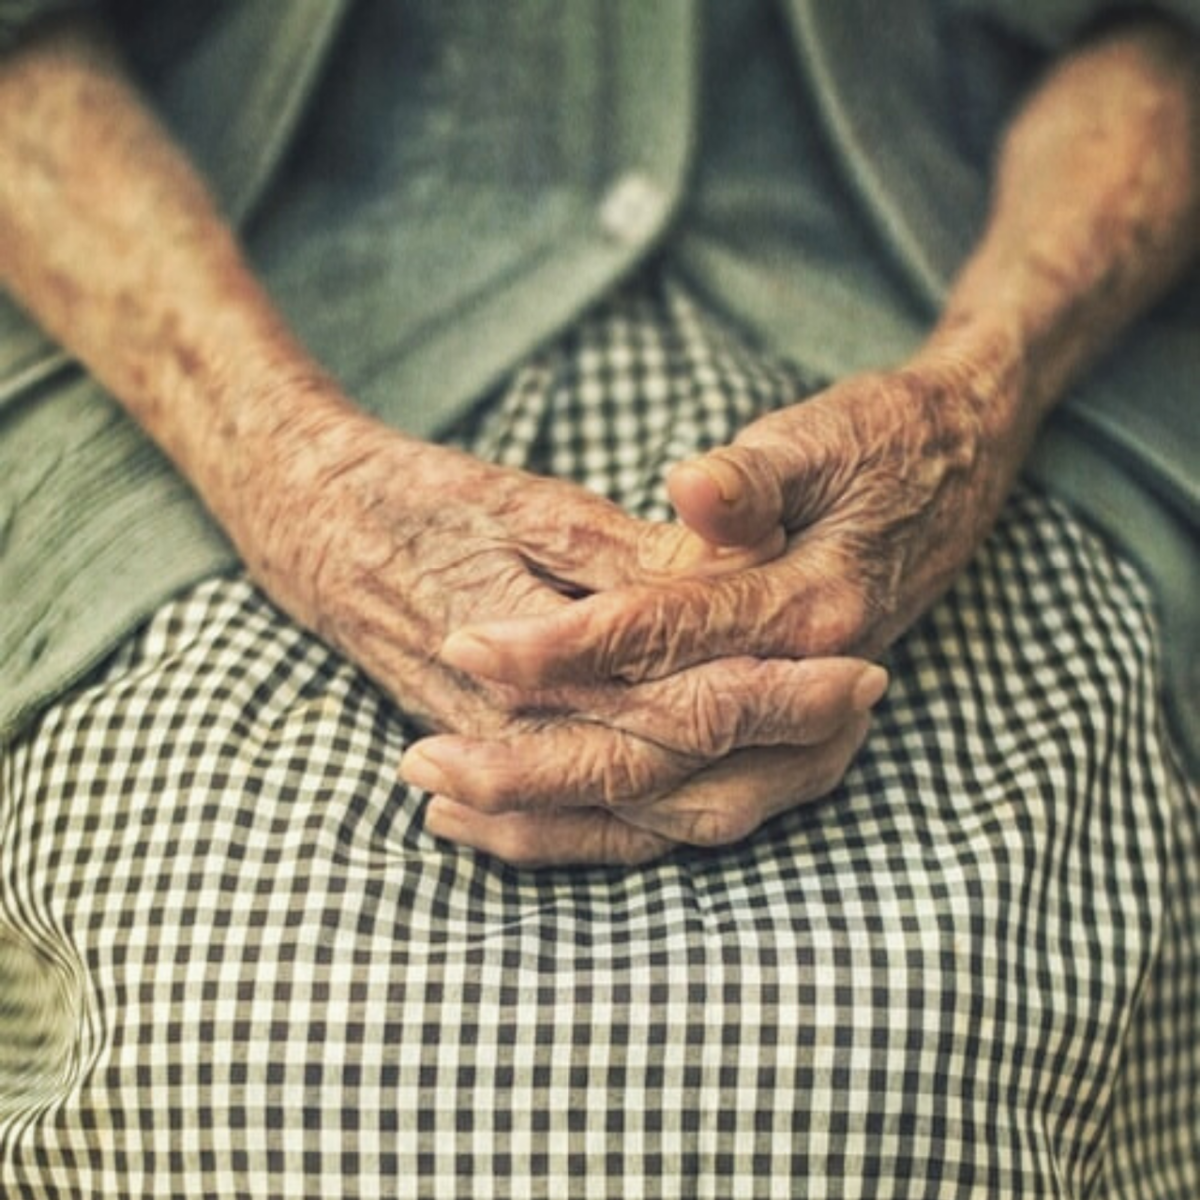 Elderly ladies hands crossed on top of her lap